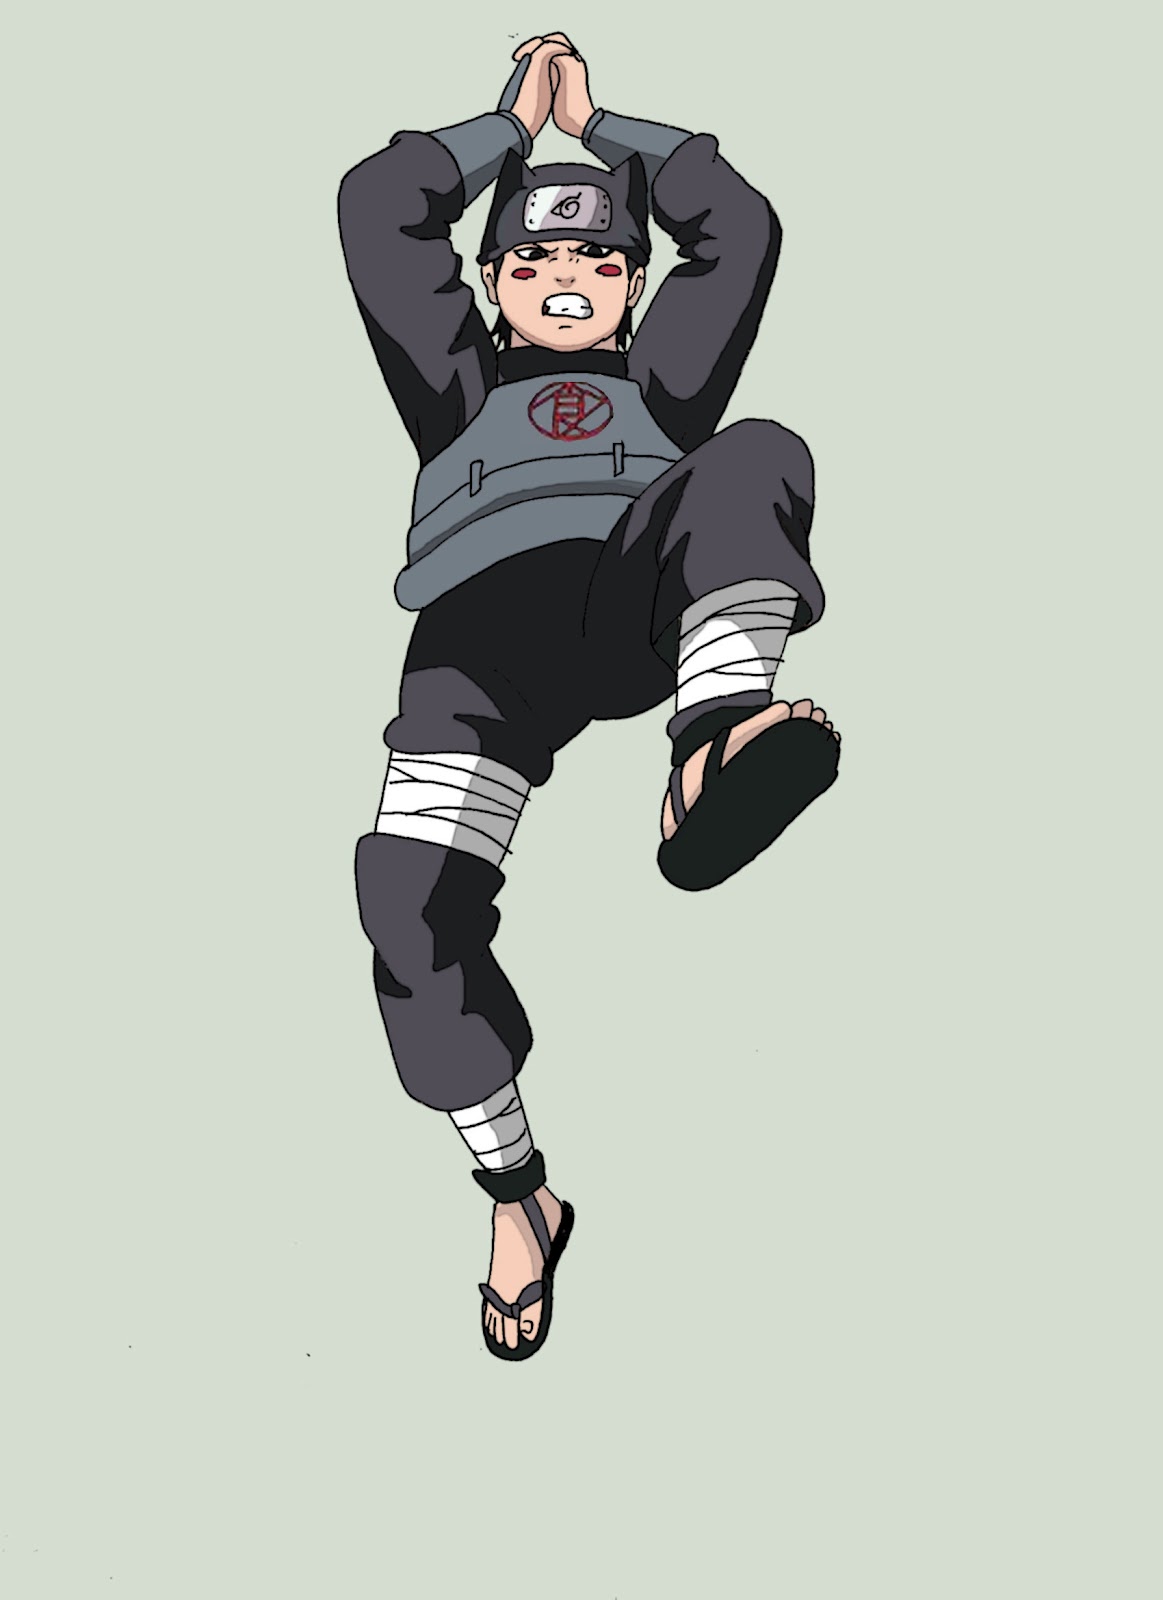 Naruto Online - Feliz aniversário, Tobirama Senju! Ele é o segundo Hokage  da Aldeia da Folha, irmão mais novo do primeiro Hokage e um dos fundadores  da aldeia. Ele é famoso por